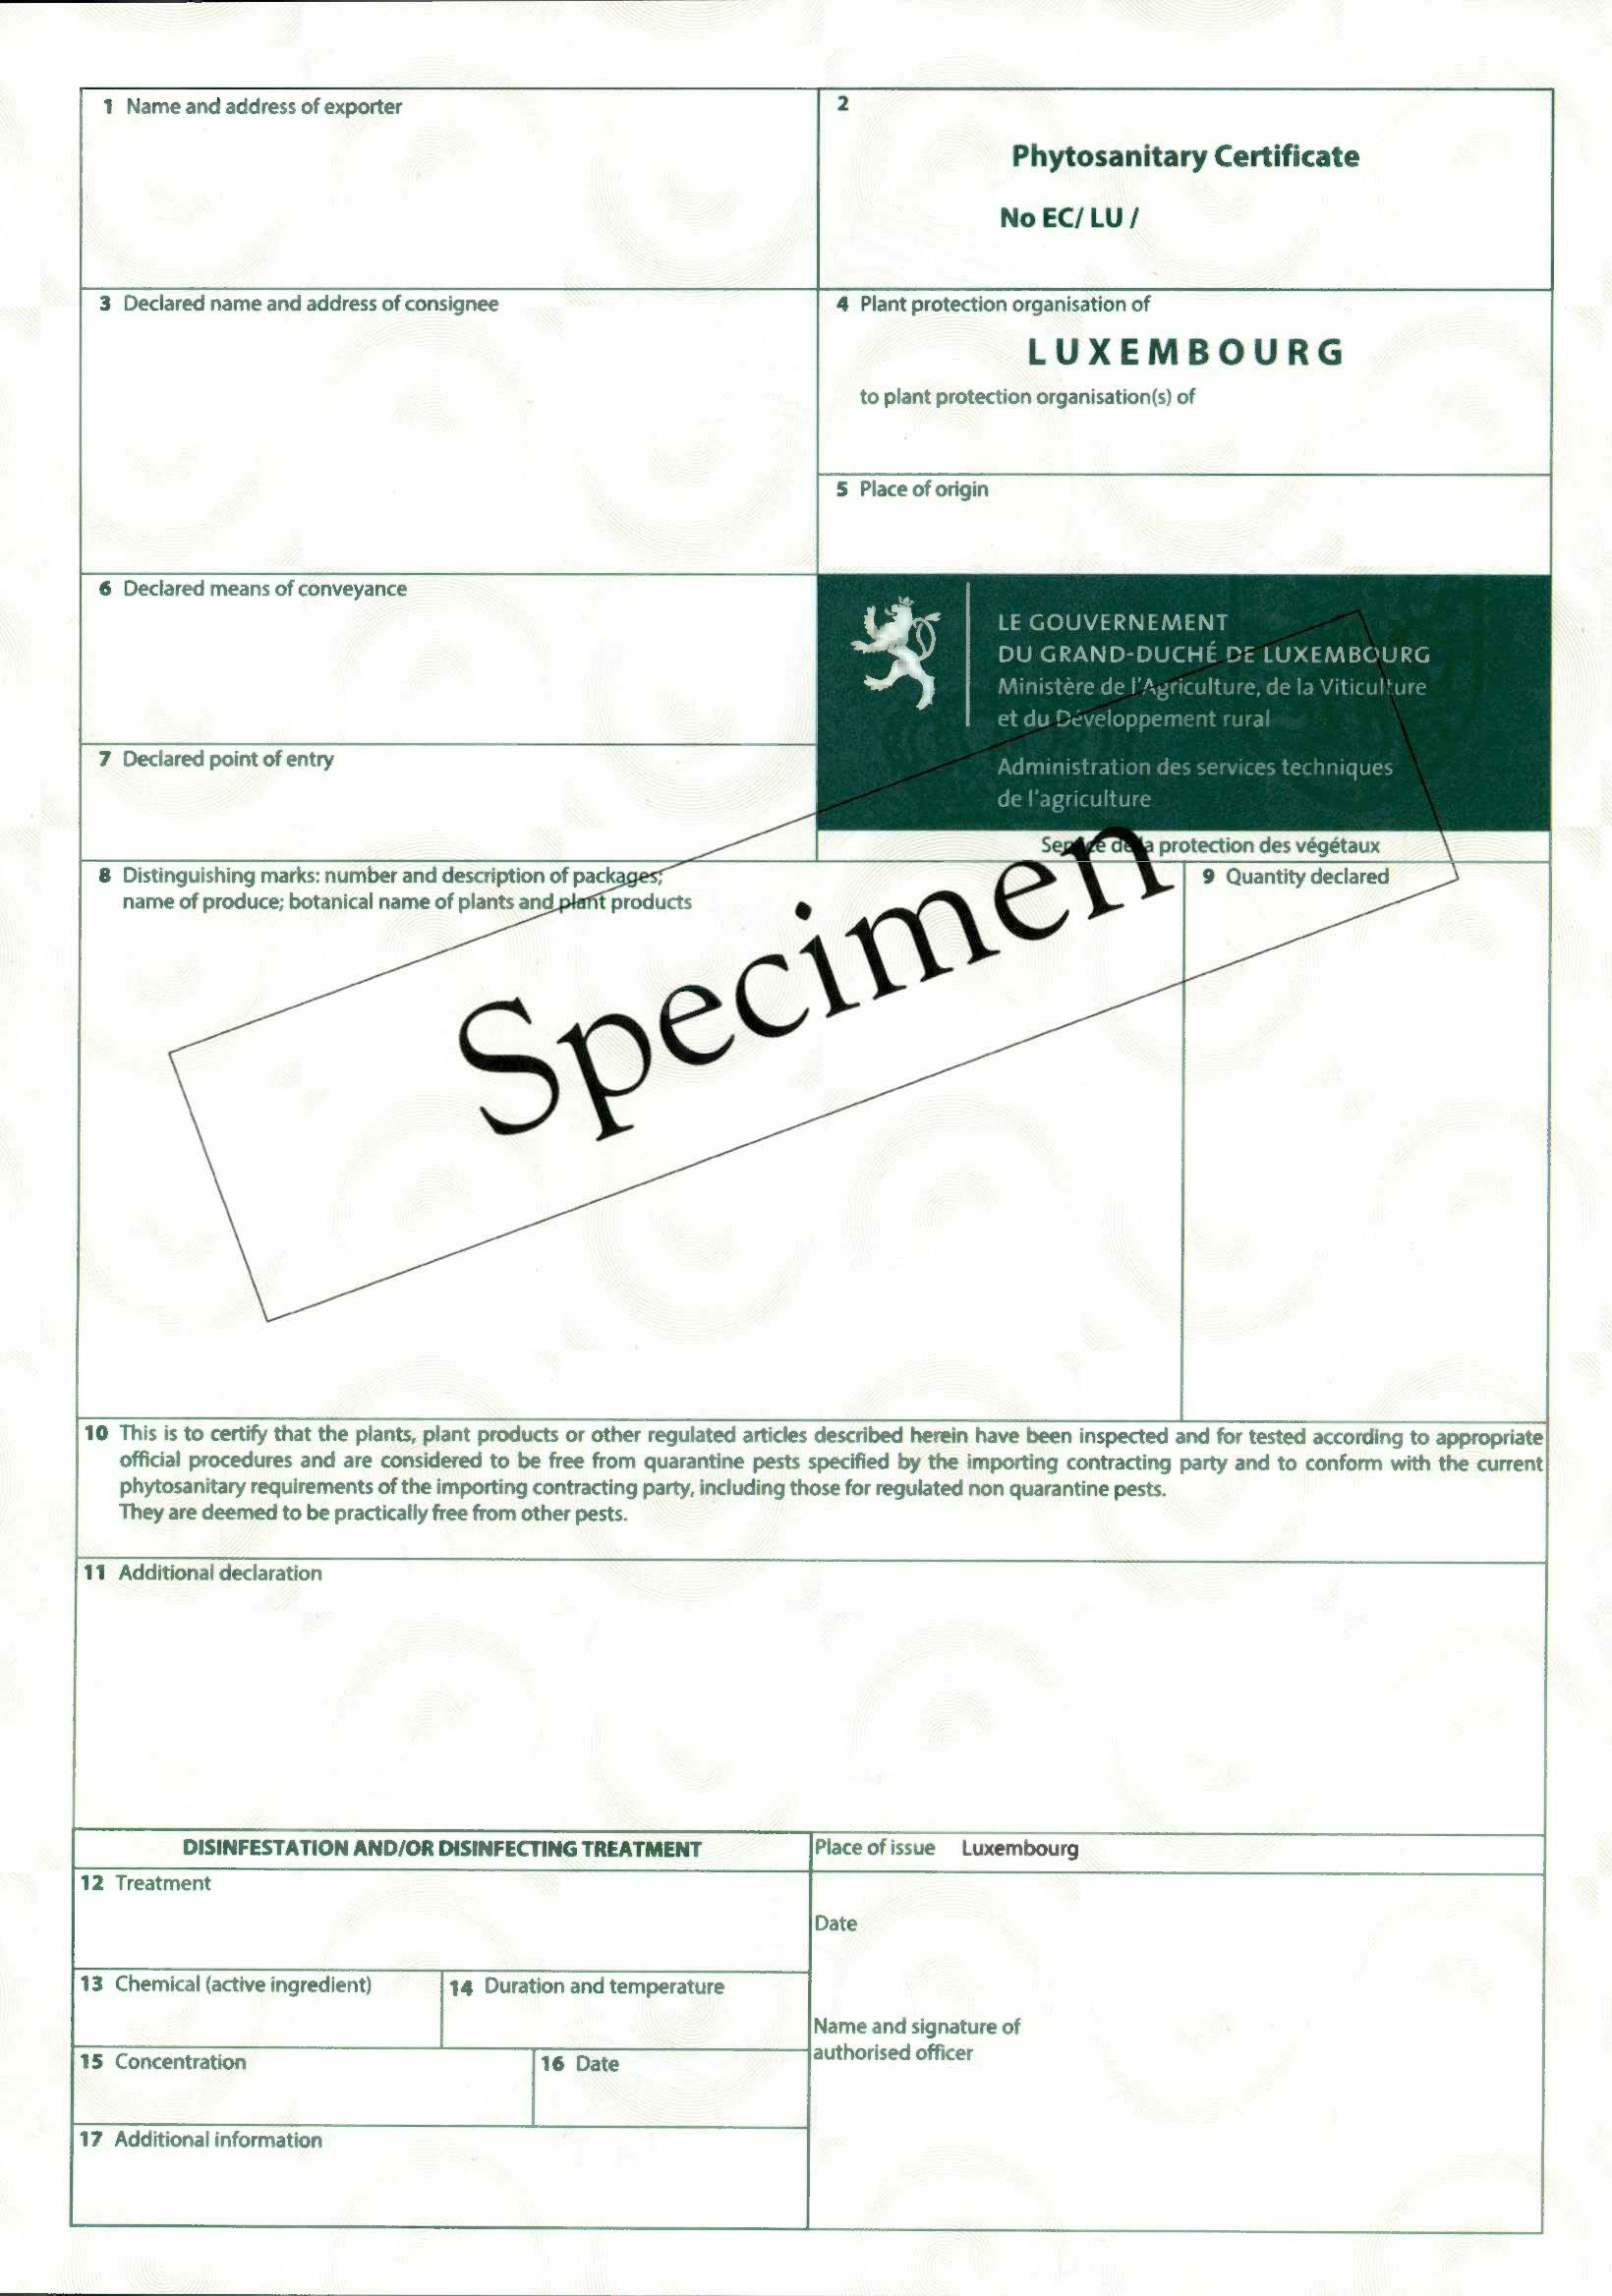 Cette image représente un certificat phytosanitaire pour l'export de végétaux ou produits végétaux v2023